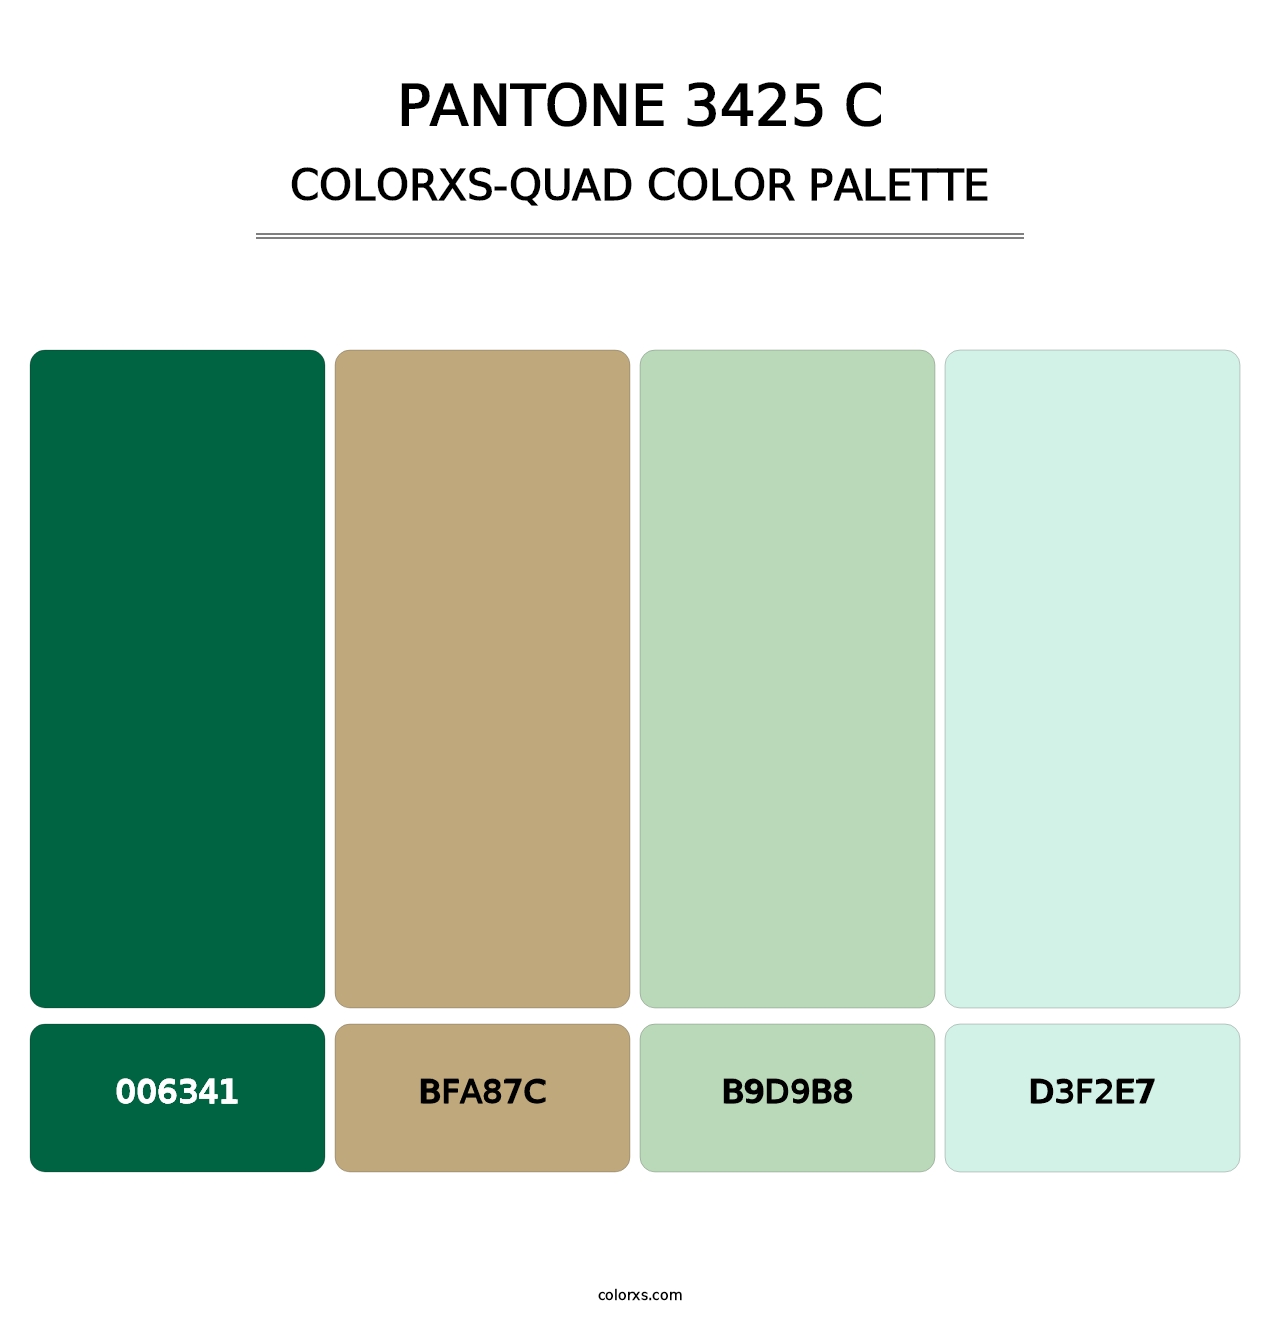 PANTONE 3425 C - Colorxs Quad Palette